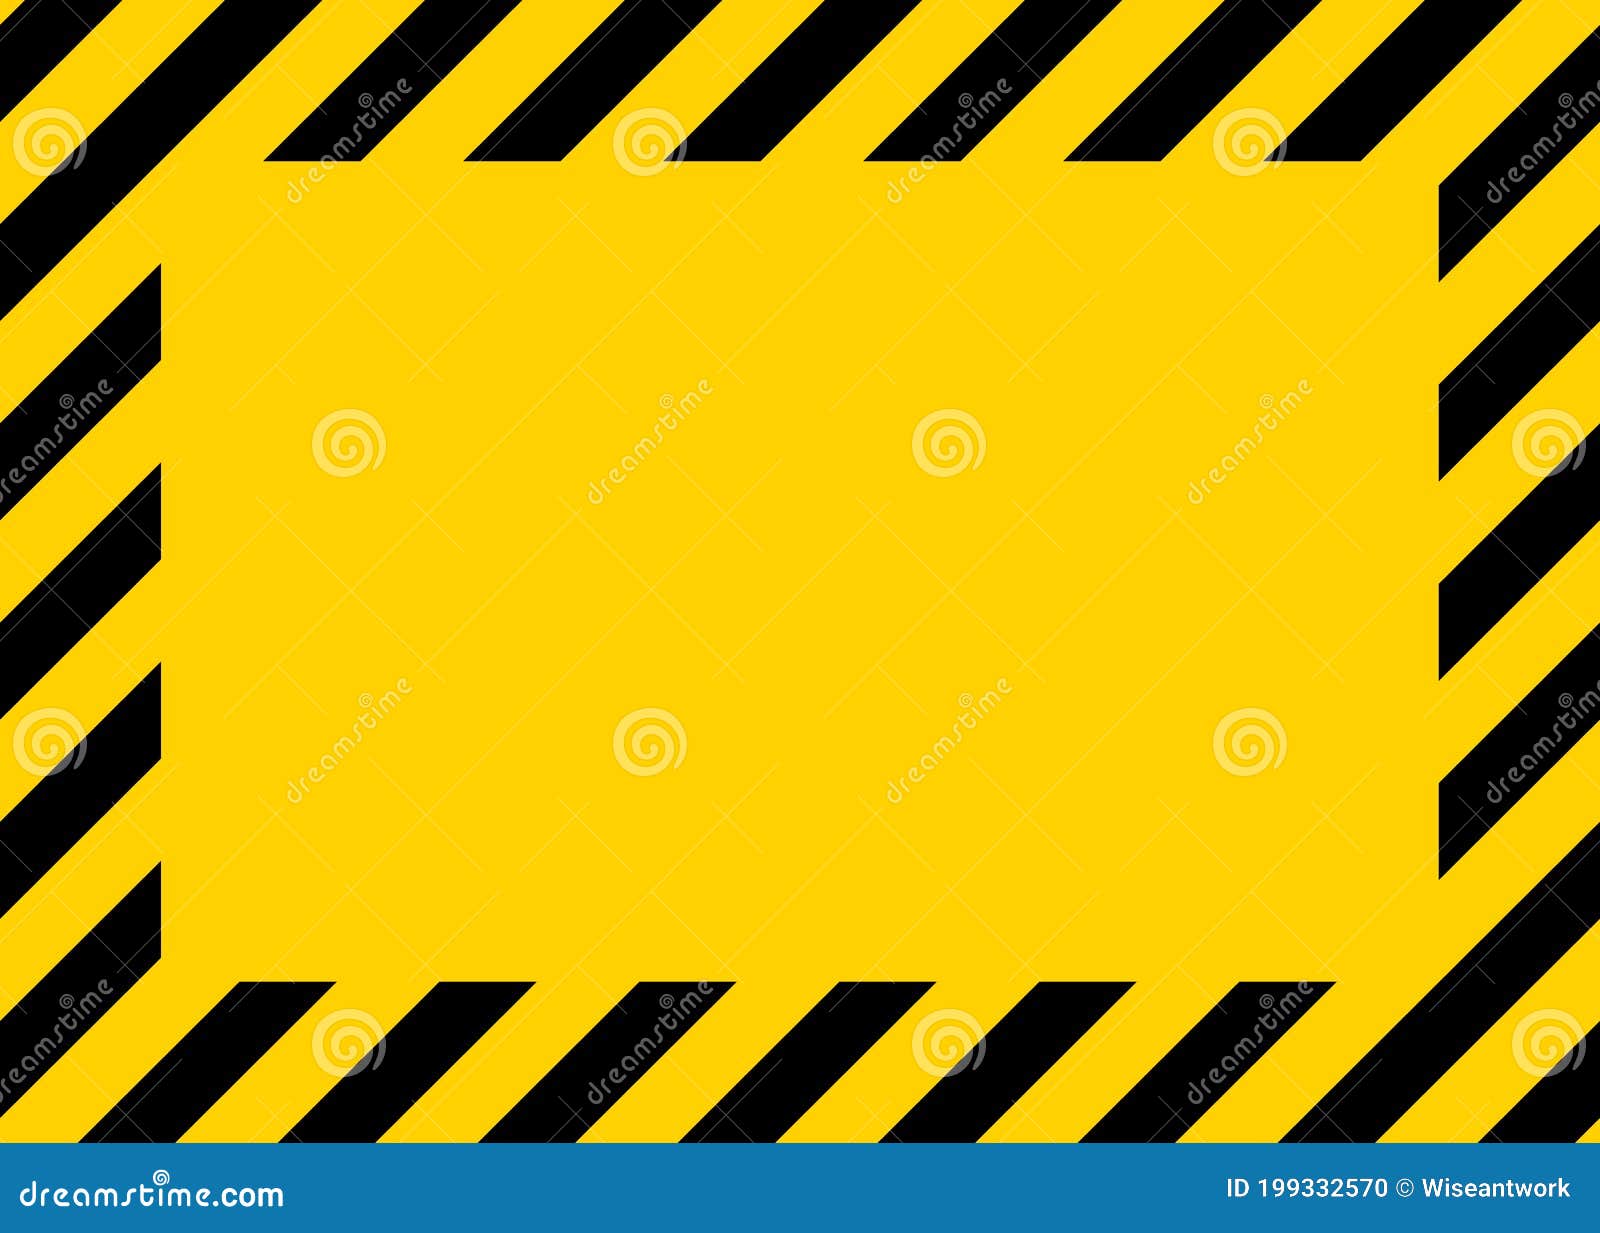 Caution Yellow